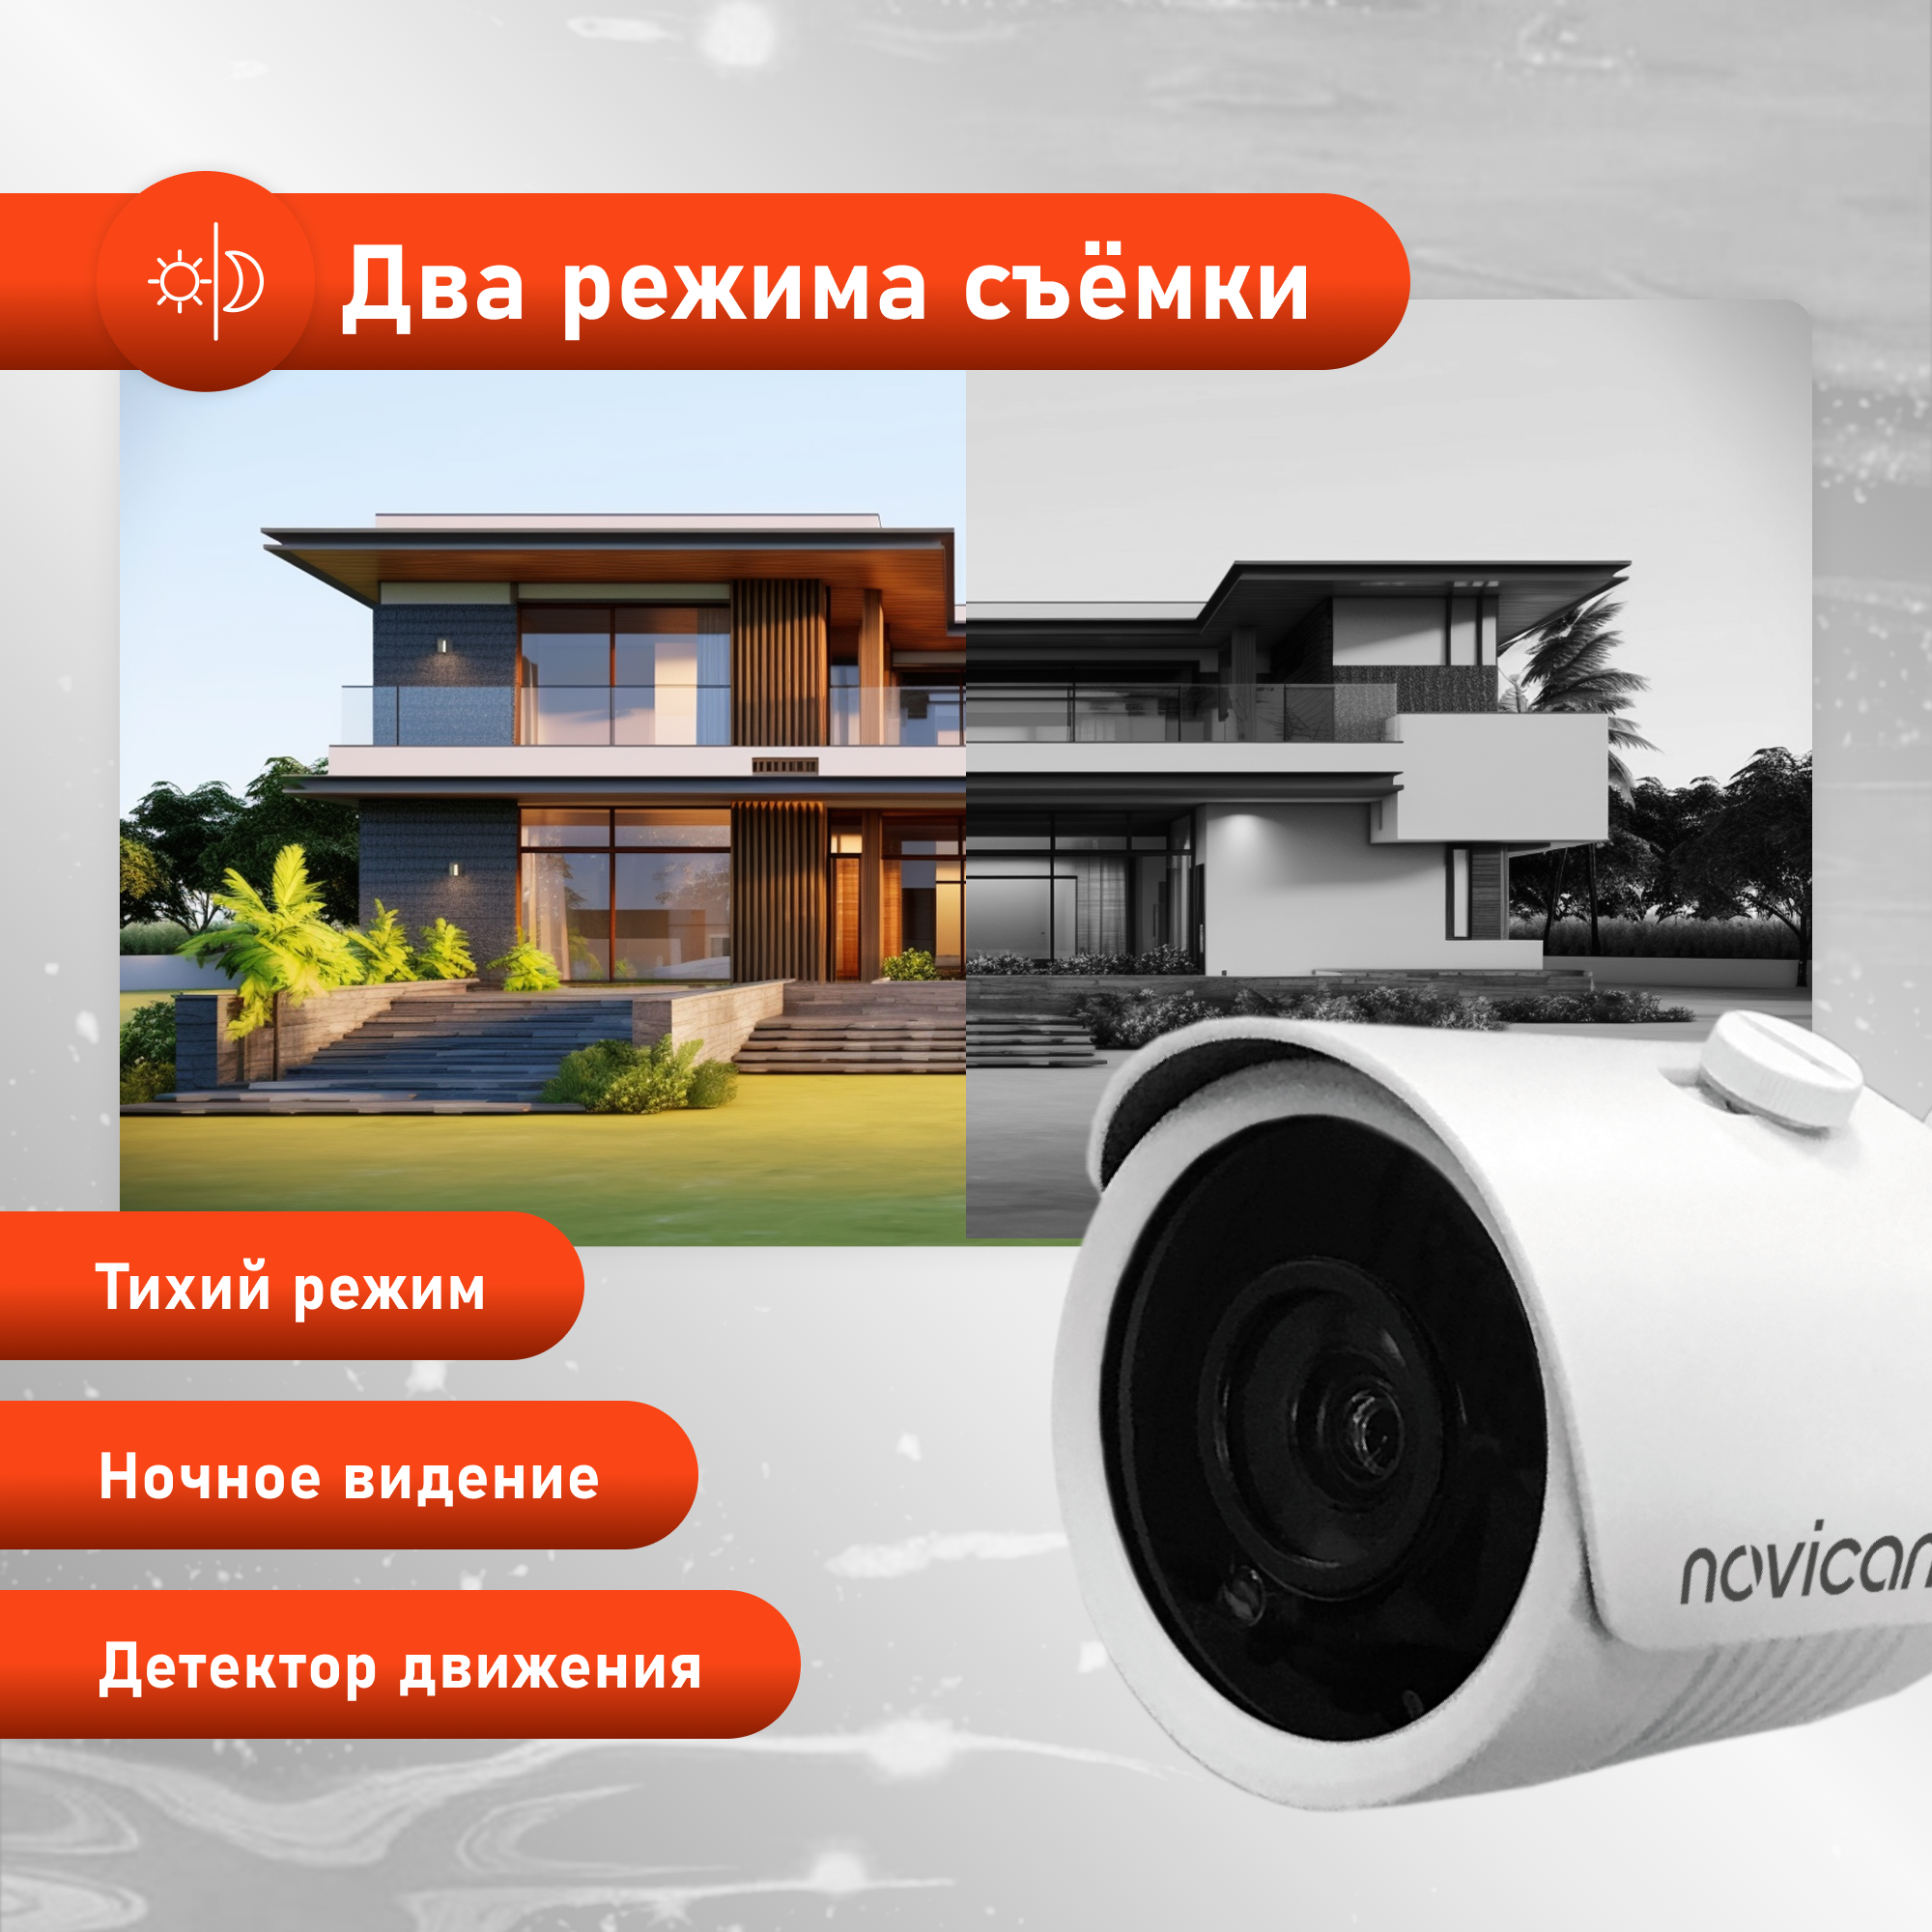 Комплект видеонаблюдения WiFi Novicam KIT 1204 ver.4490. 4 уличные камеры и регистратор, 8ch, мобильное приложение